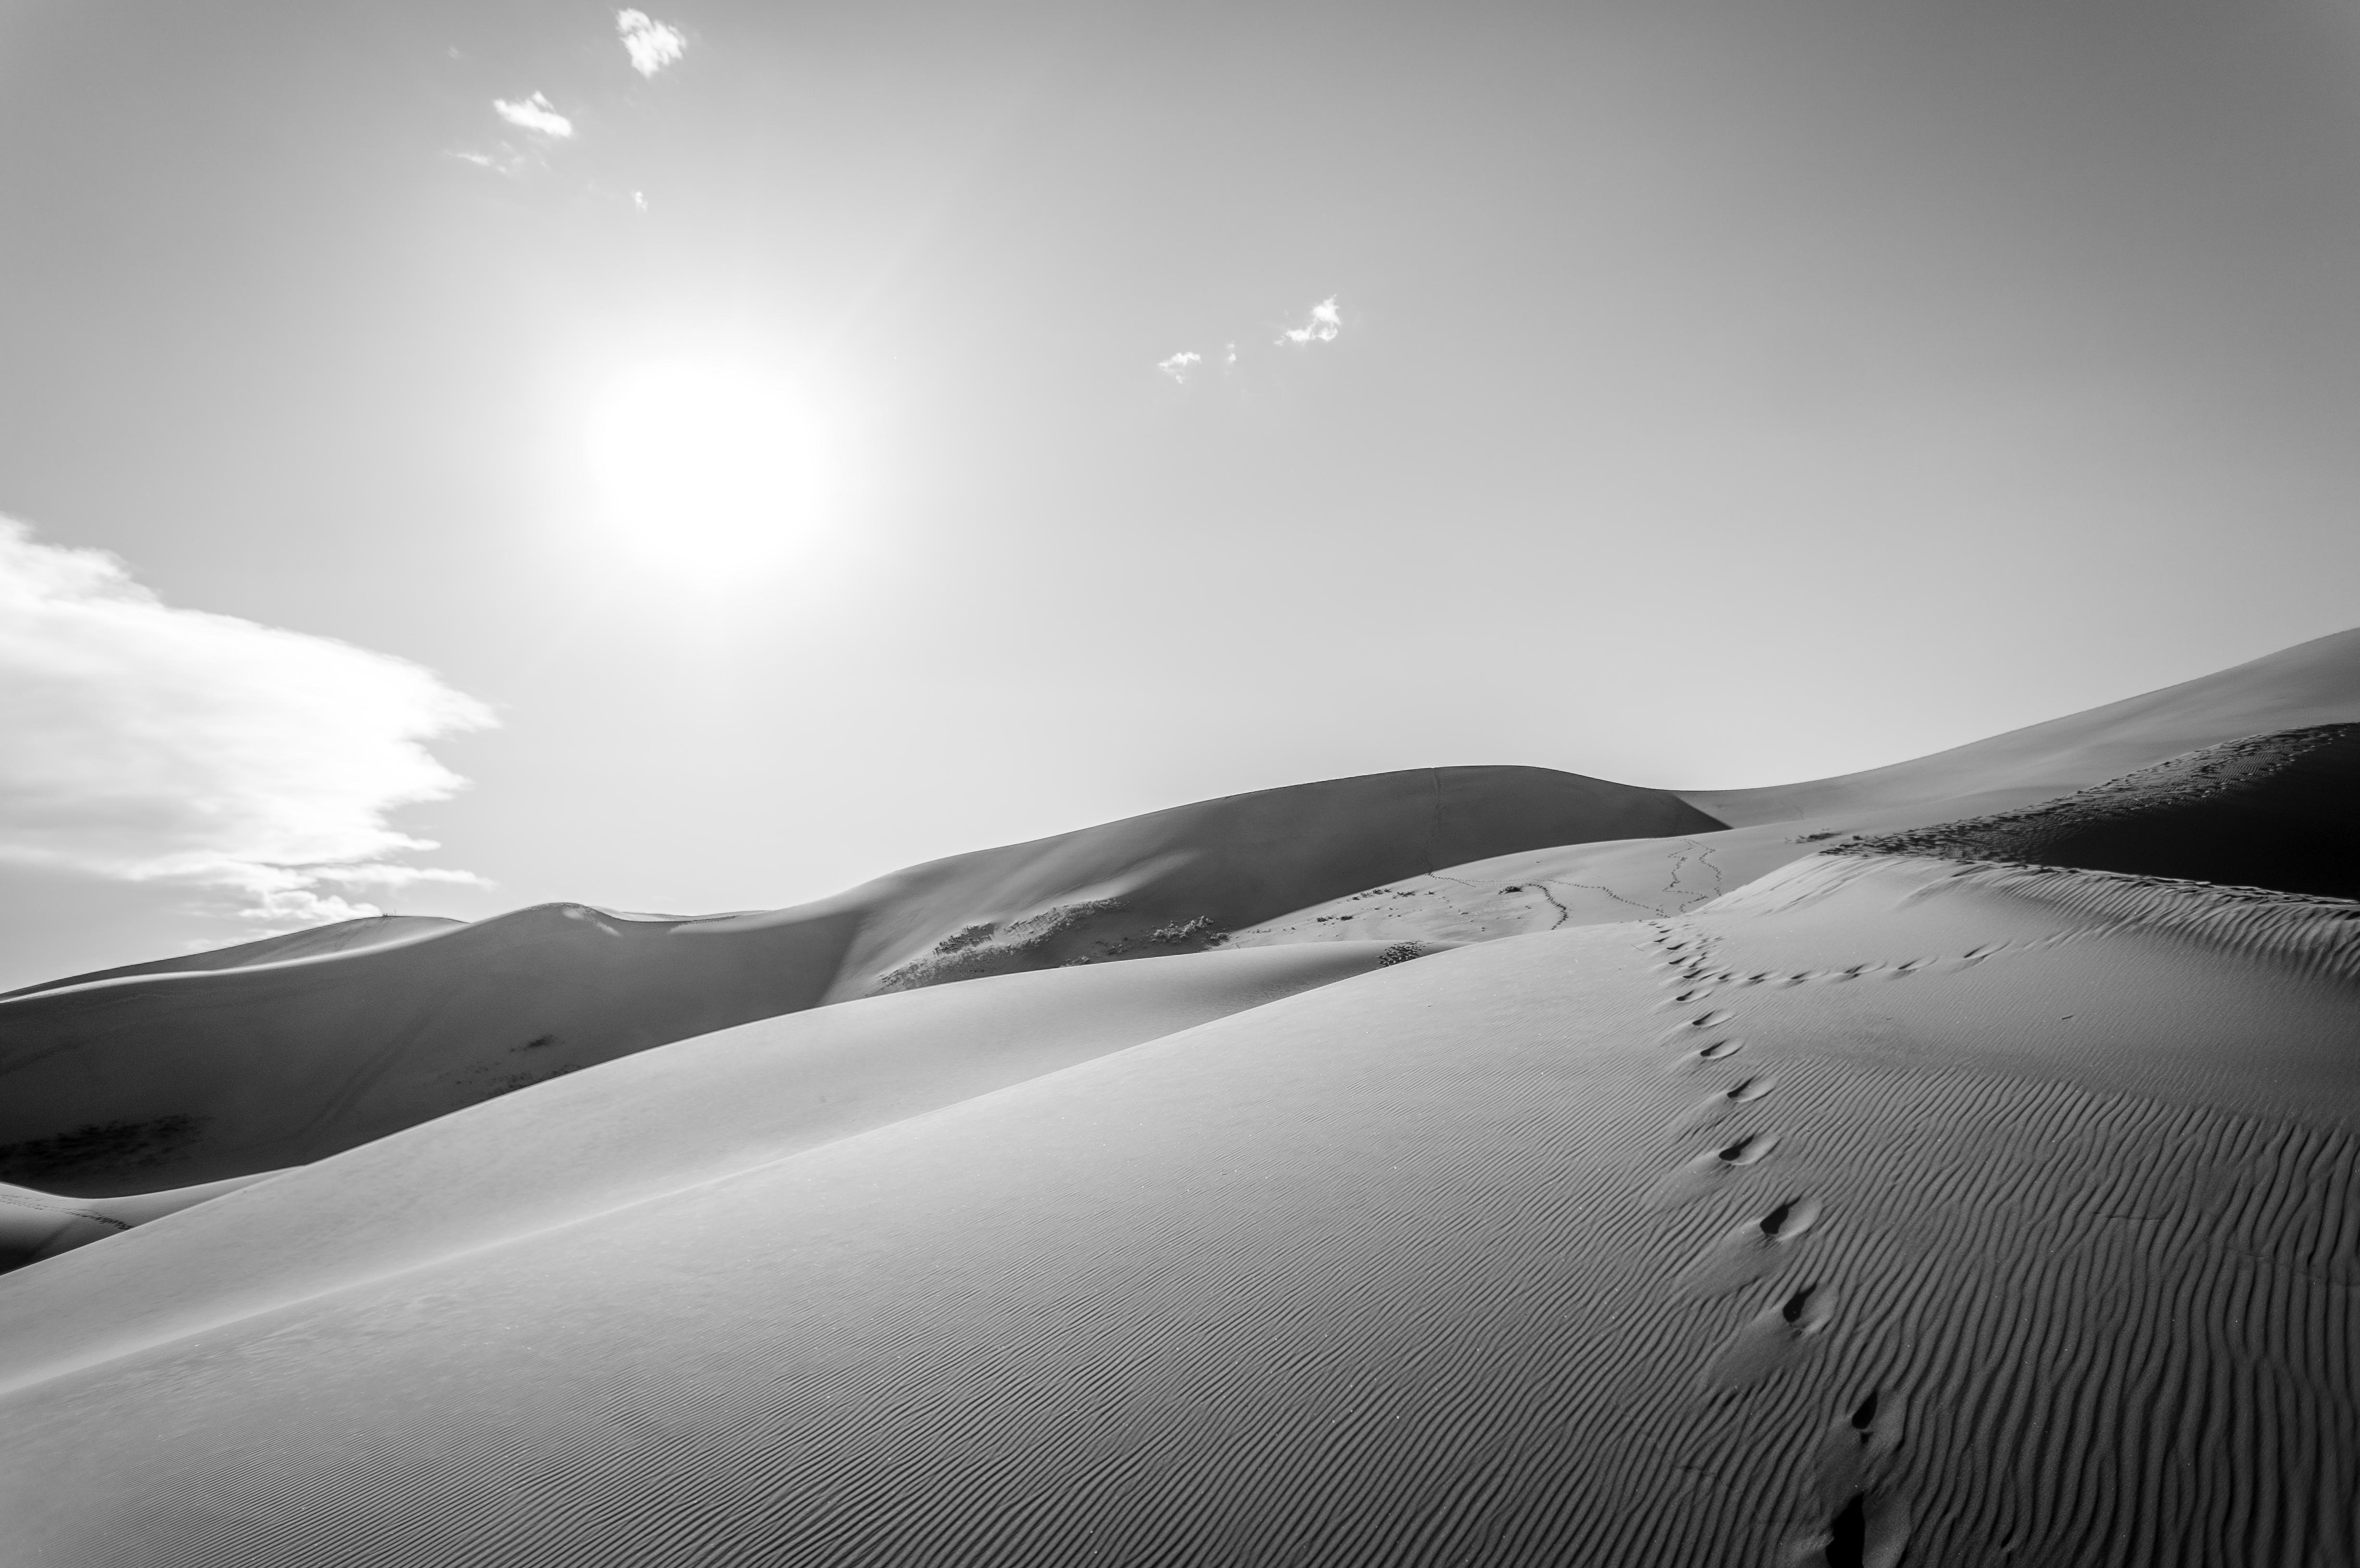 Desert Sand Dune Black Amp White Footprint 4912x3264